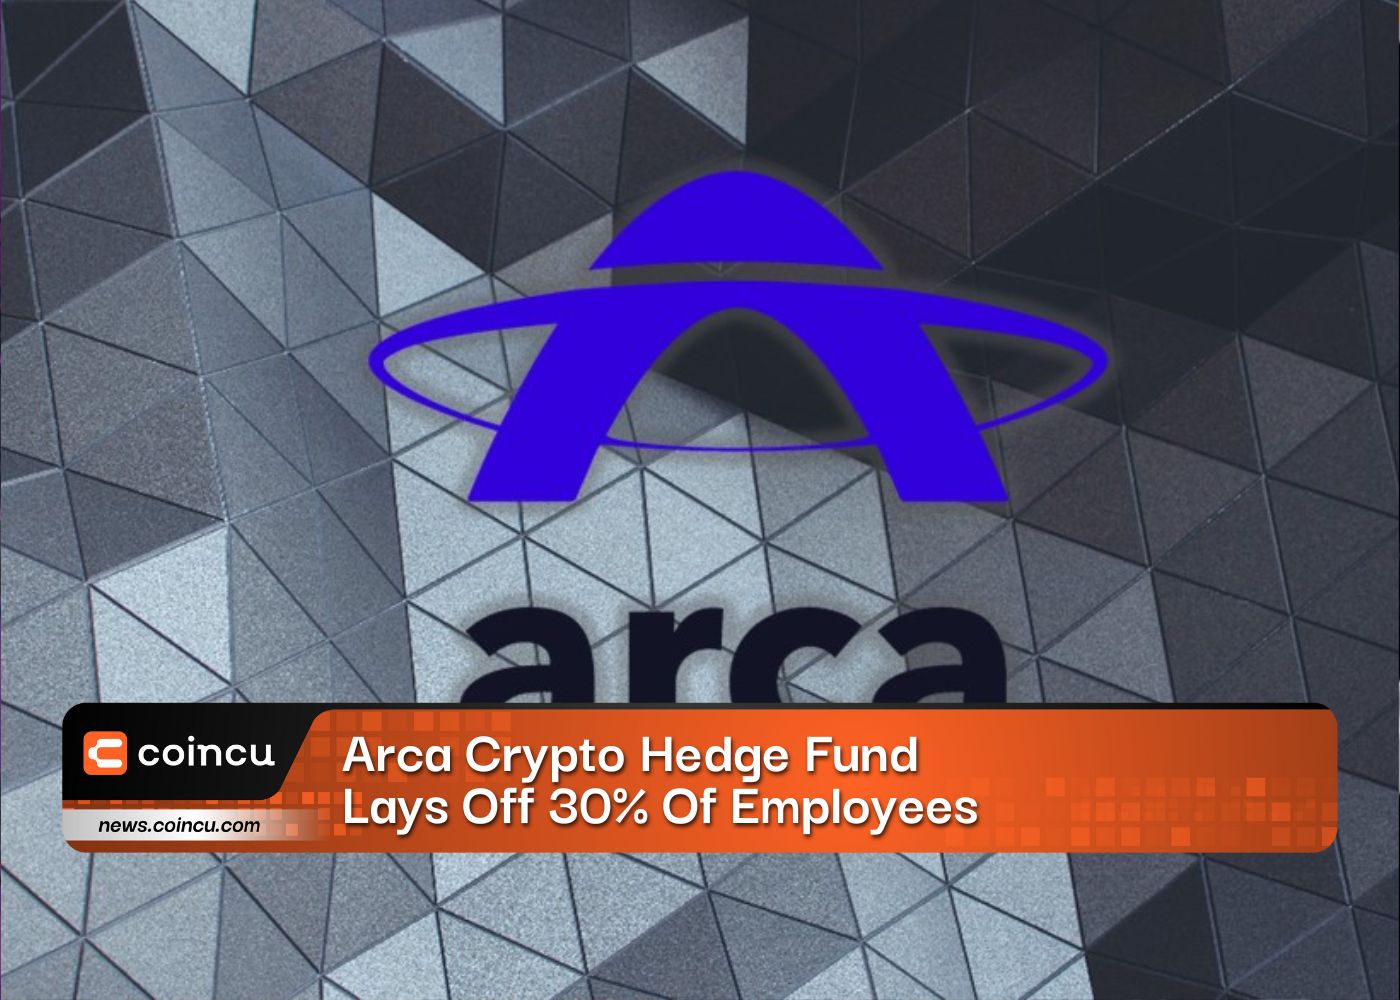 Arca Crypto Hedge Fund demite 30% dos funcionários